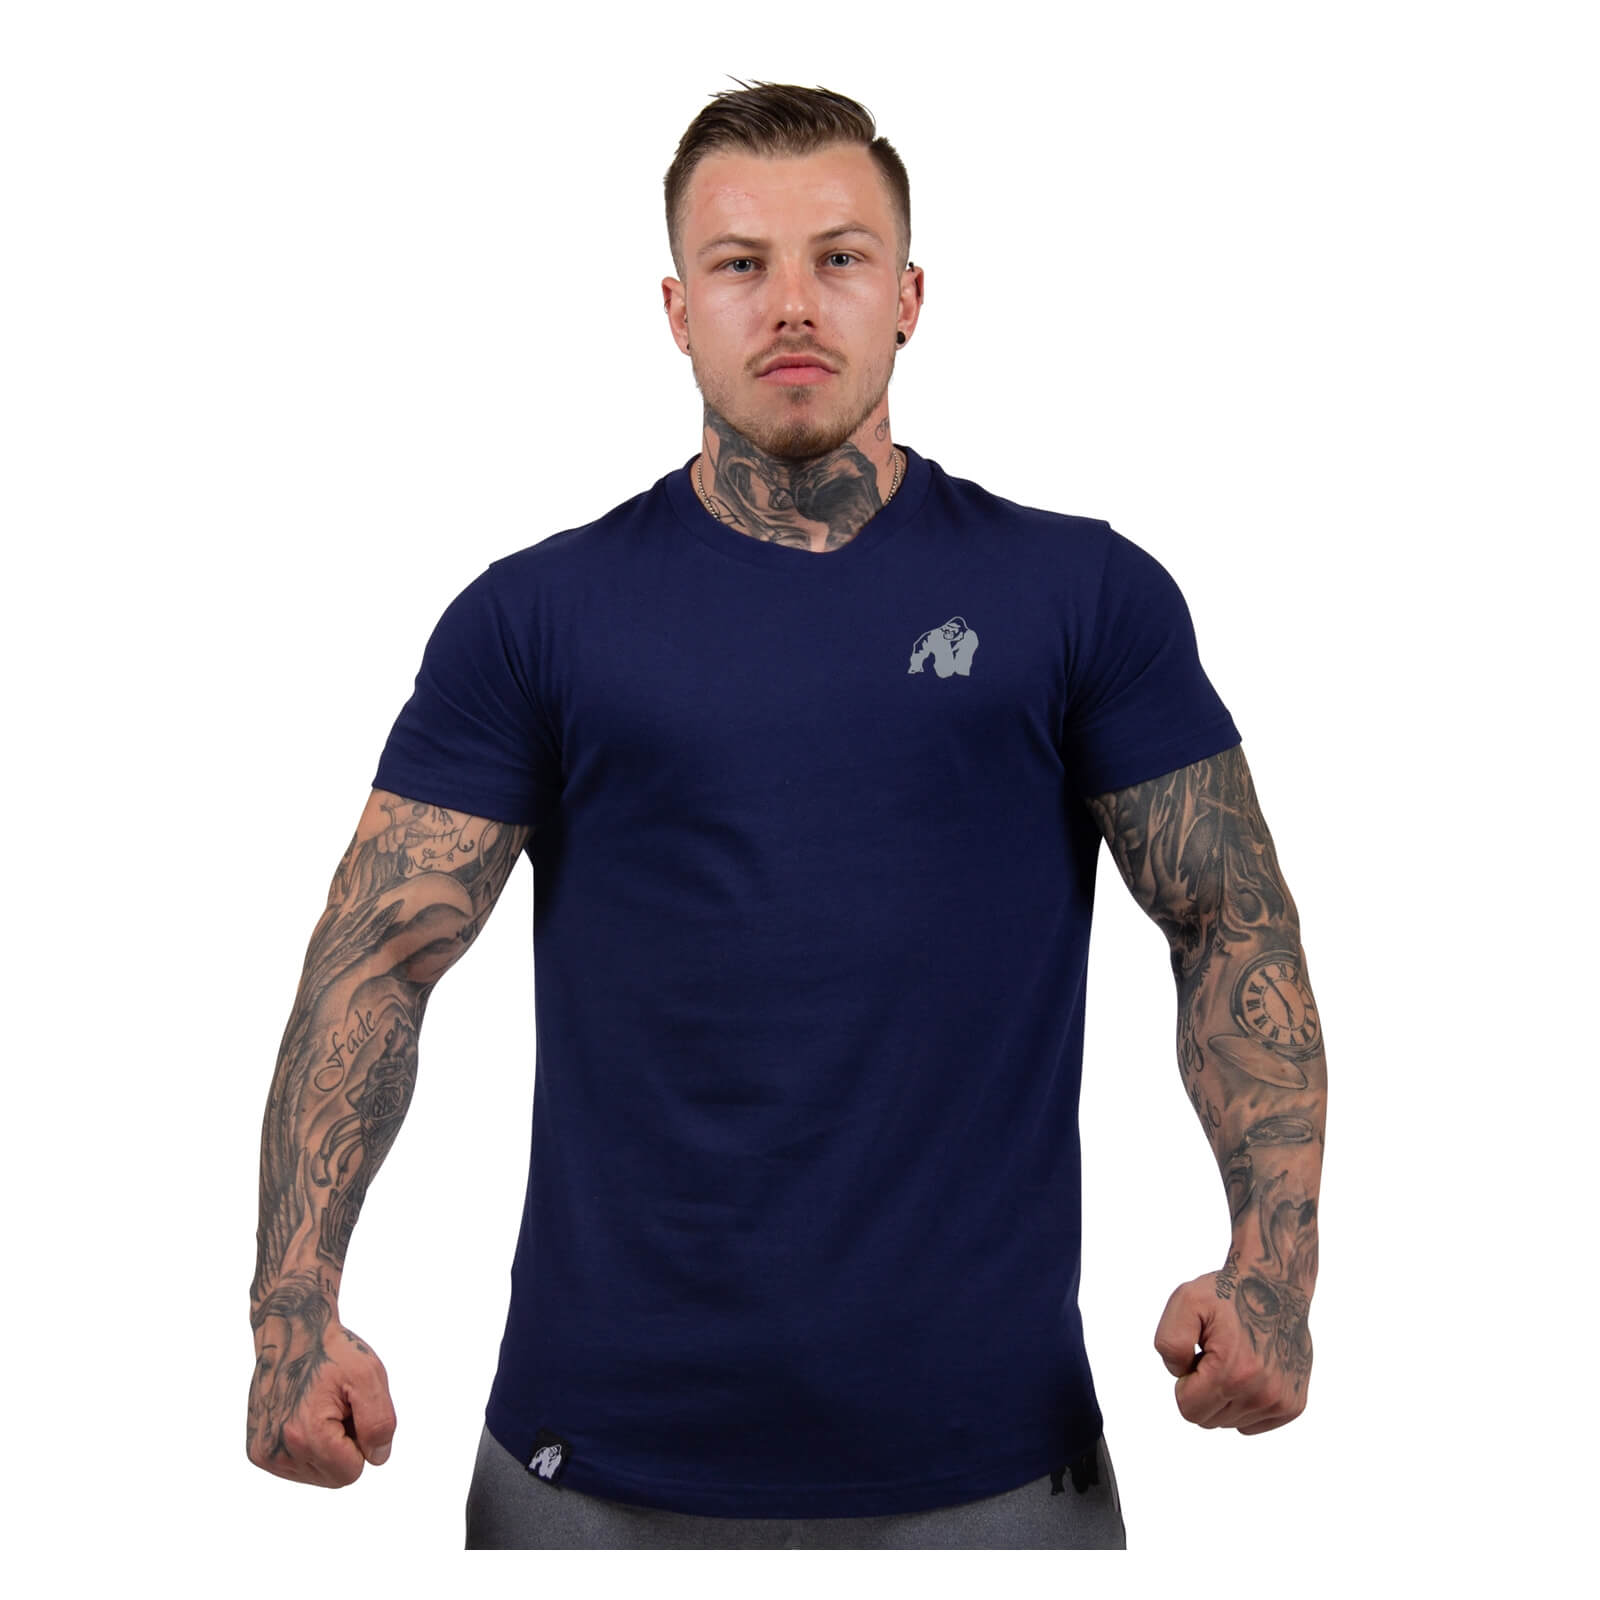 Sjekke Detroit T-Shirt, navy, Gorilla Wear hos SportGymButikken.no